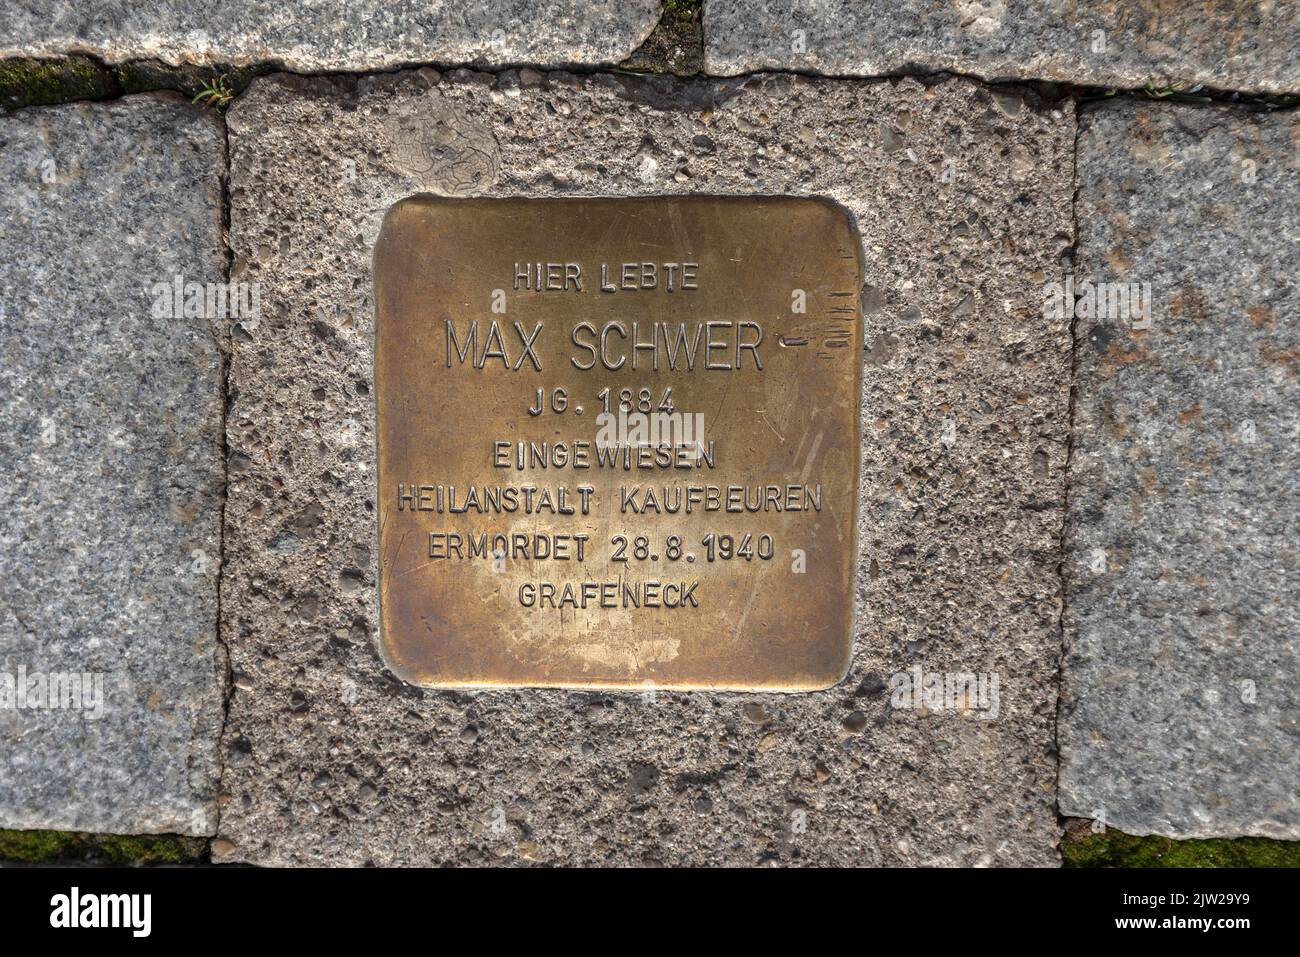 Stolperstein, pierre commémorative d'un citoyen juif, assassiné par les nazis en 1940, vieille ville de Kempten (Allgaeu), Bavière, Allemagne Banque D'Images